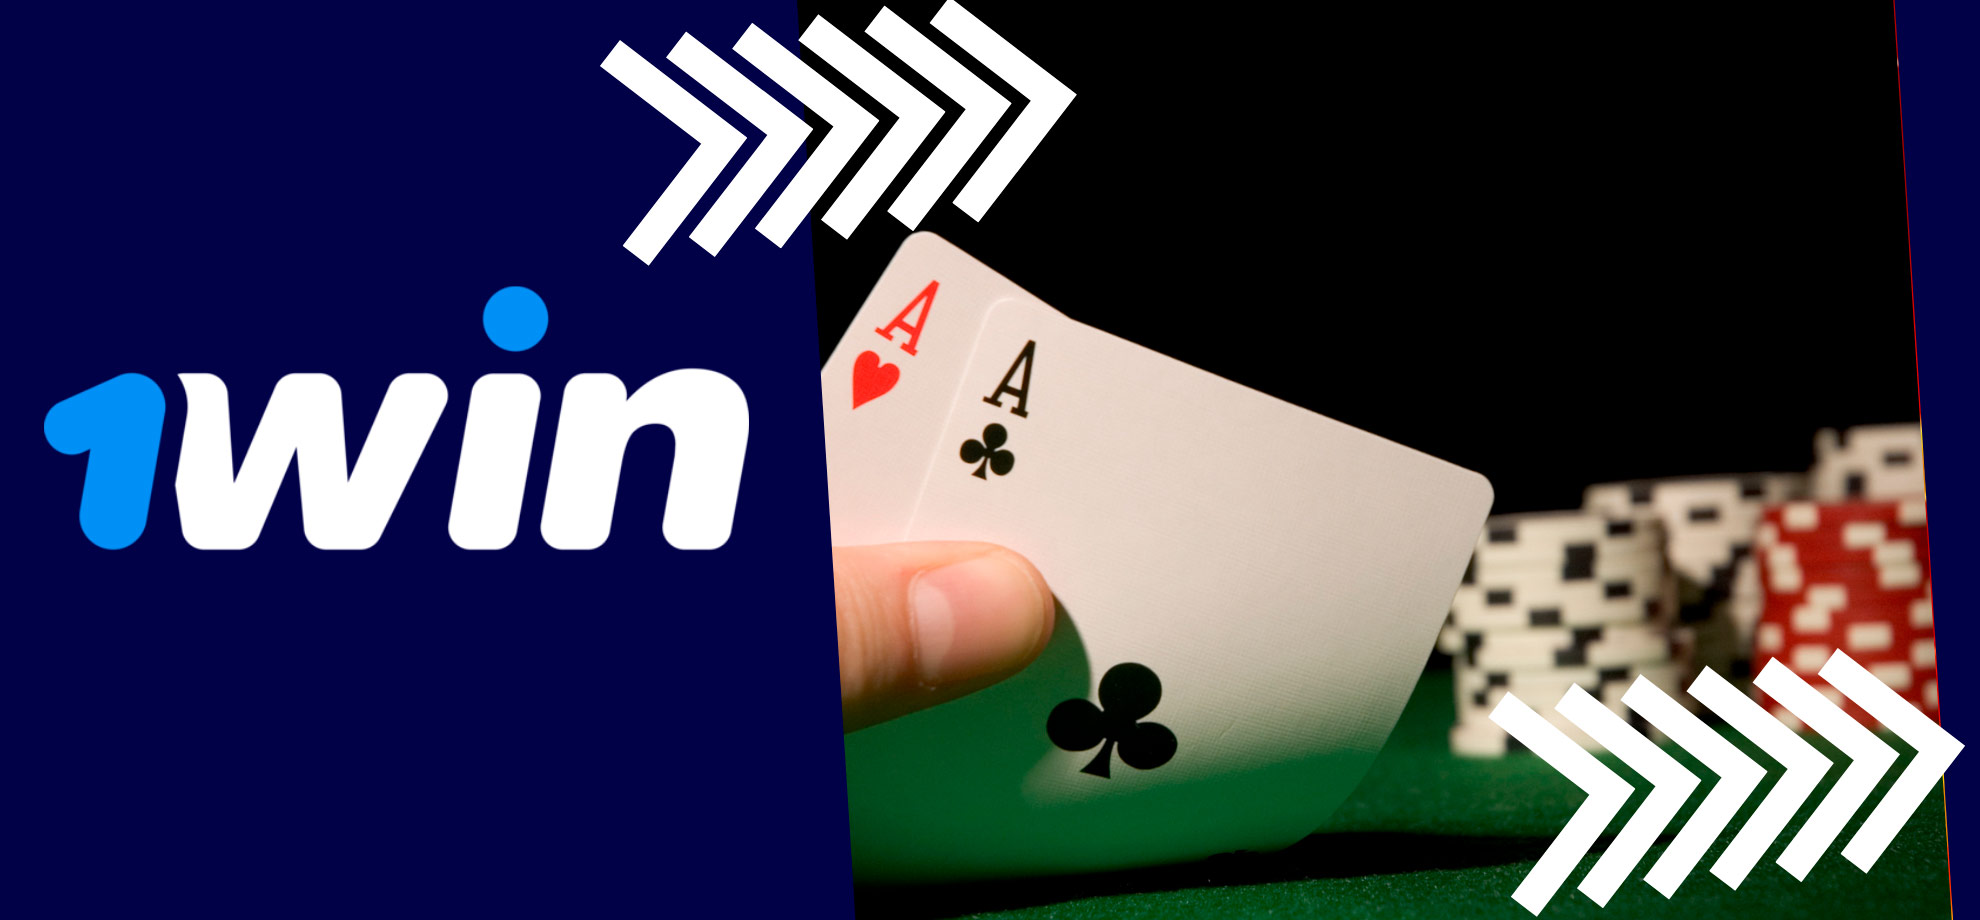 Jogue pôquer no 1Win e descubra uma nova experiência de apostas online